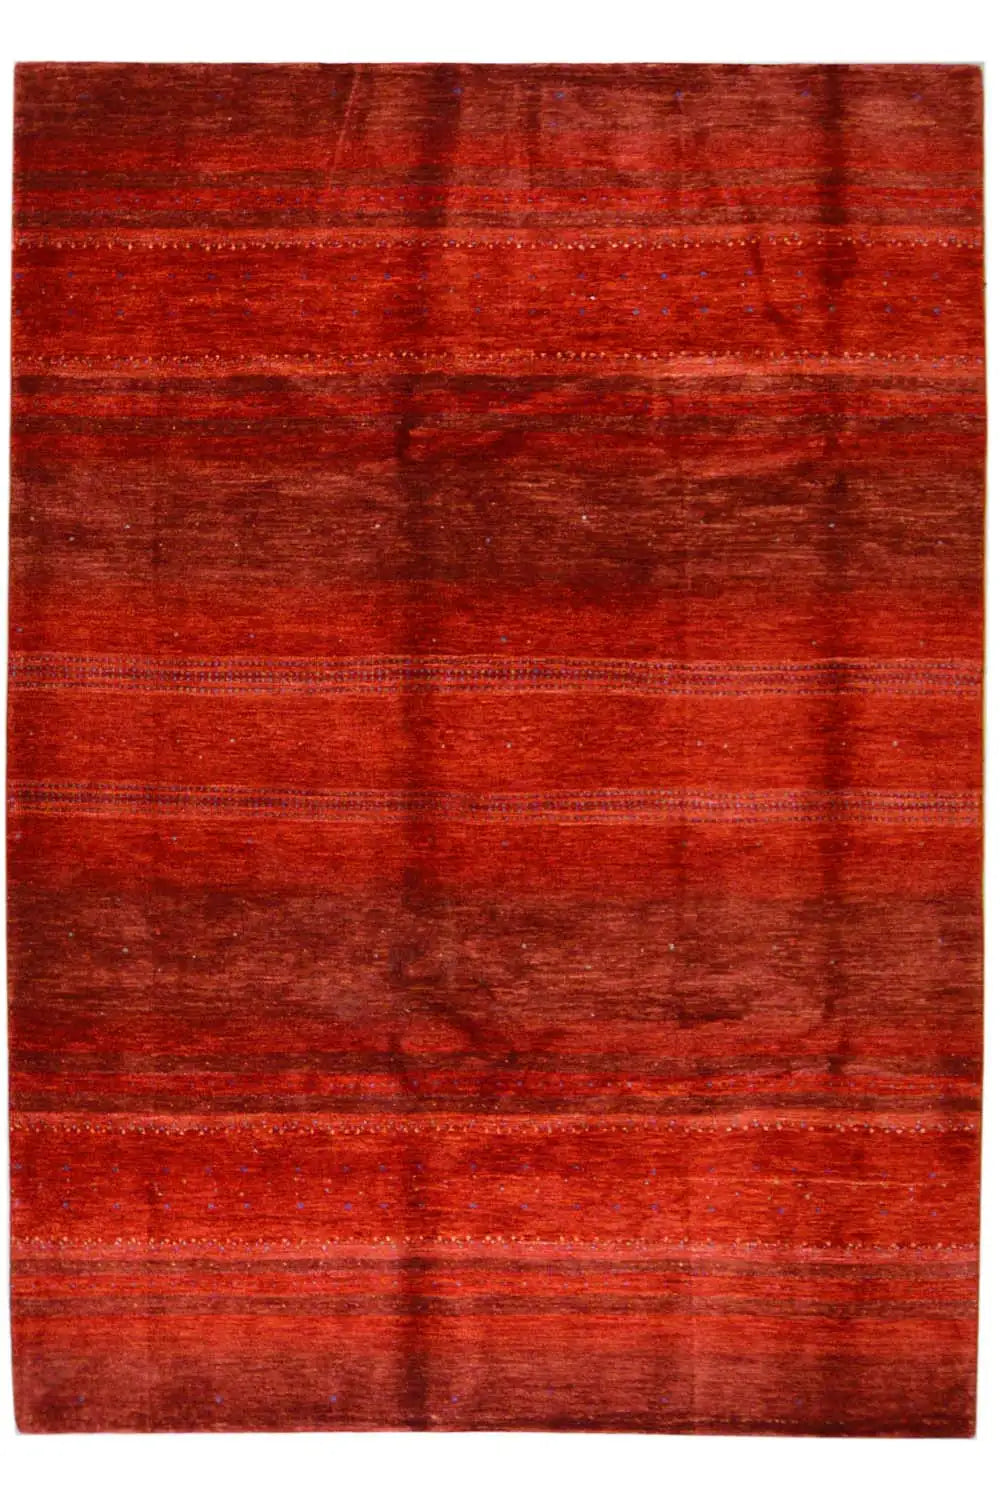 Gabbeh Lori Iran - 1401432 (299x204cm) - German Carpet Shop